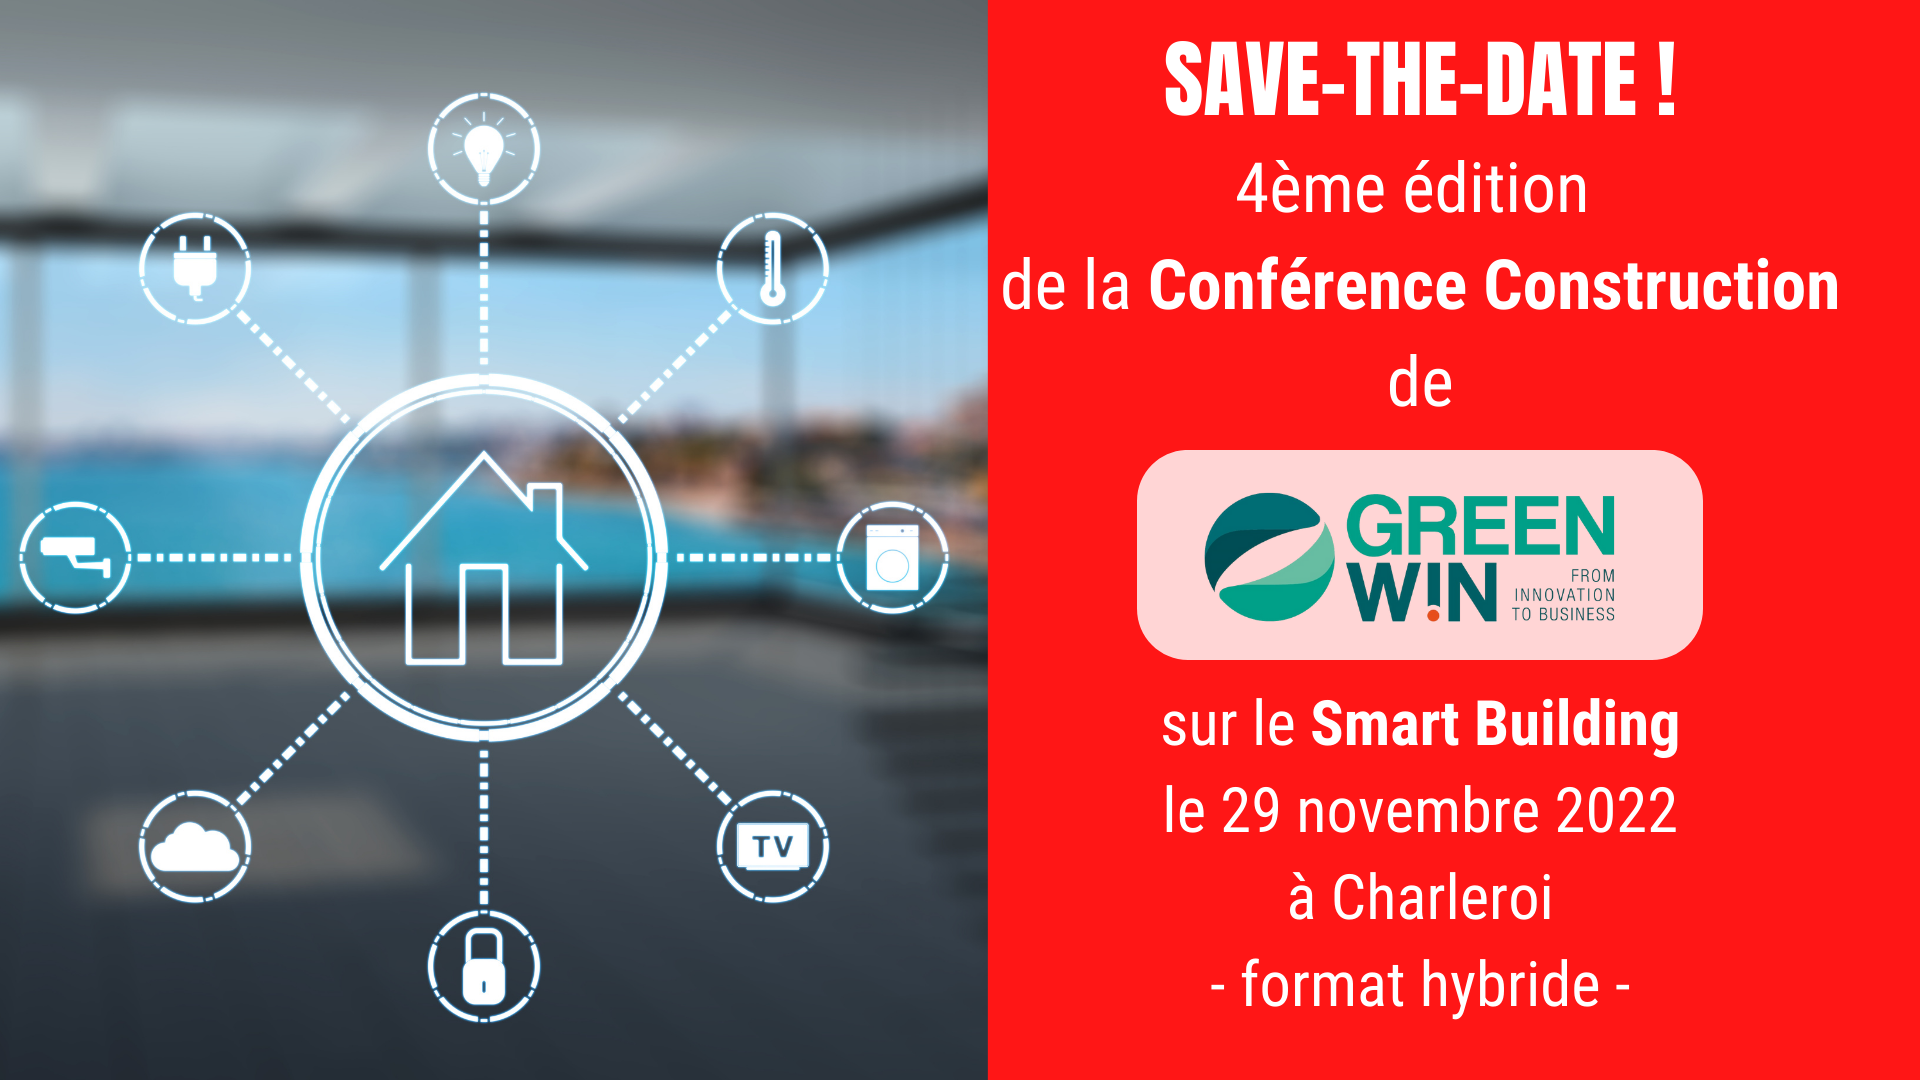 SAVE-THE-DATE: la 4ème édition de la Conférence Construction de GreenWin aura lieu le 29 novembre 2022